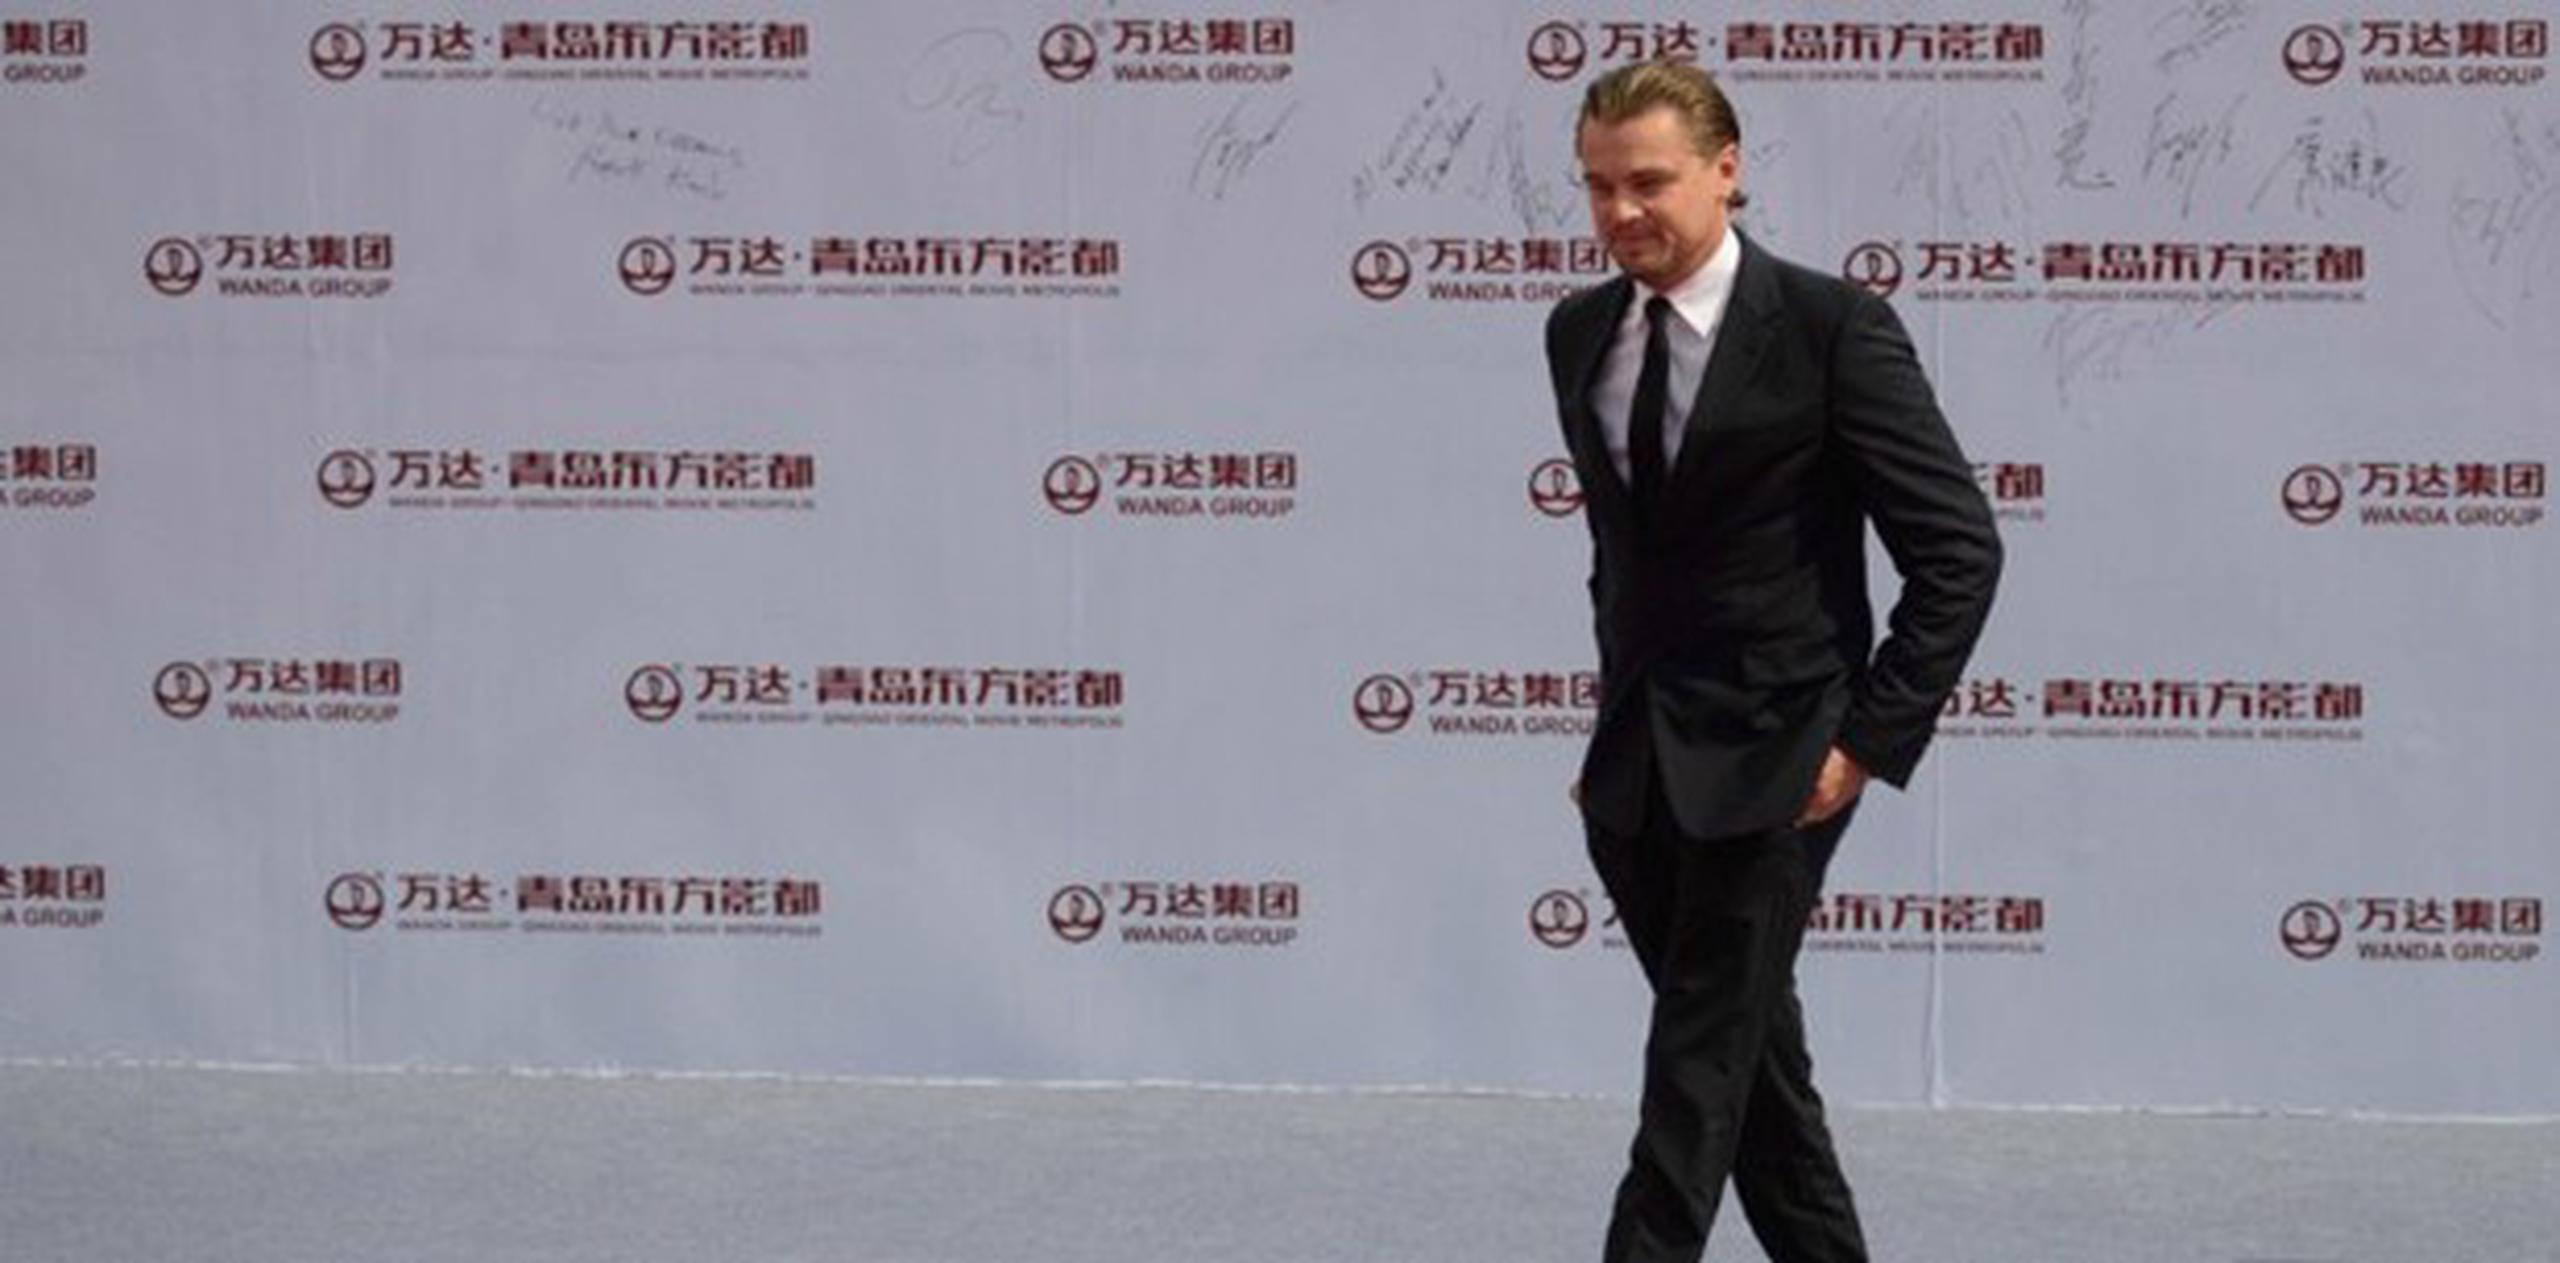 La presentación de la compañía Dalian Wanda Group incluyó una alfombra roja con la presencia de estrellas como Leonardo DiCapio. (AP)